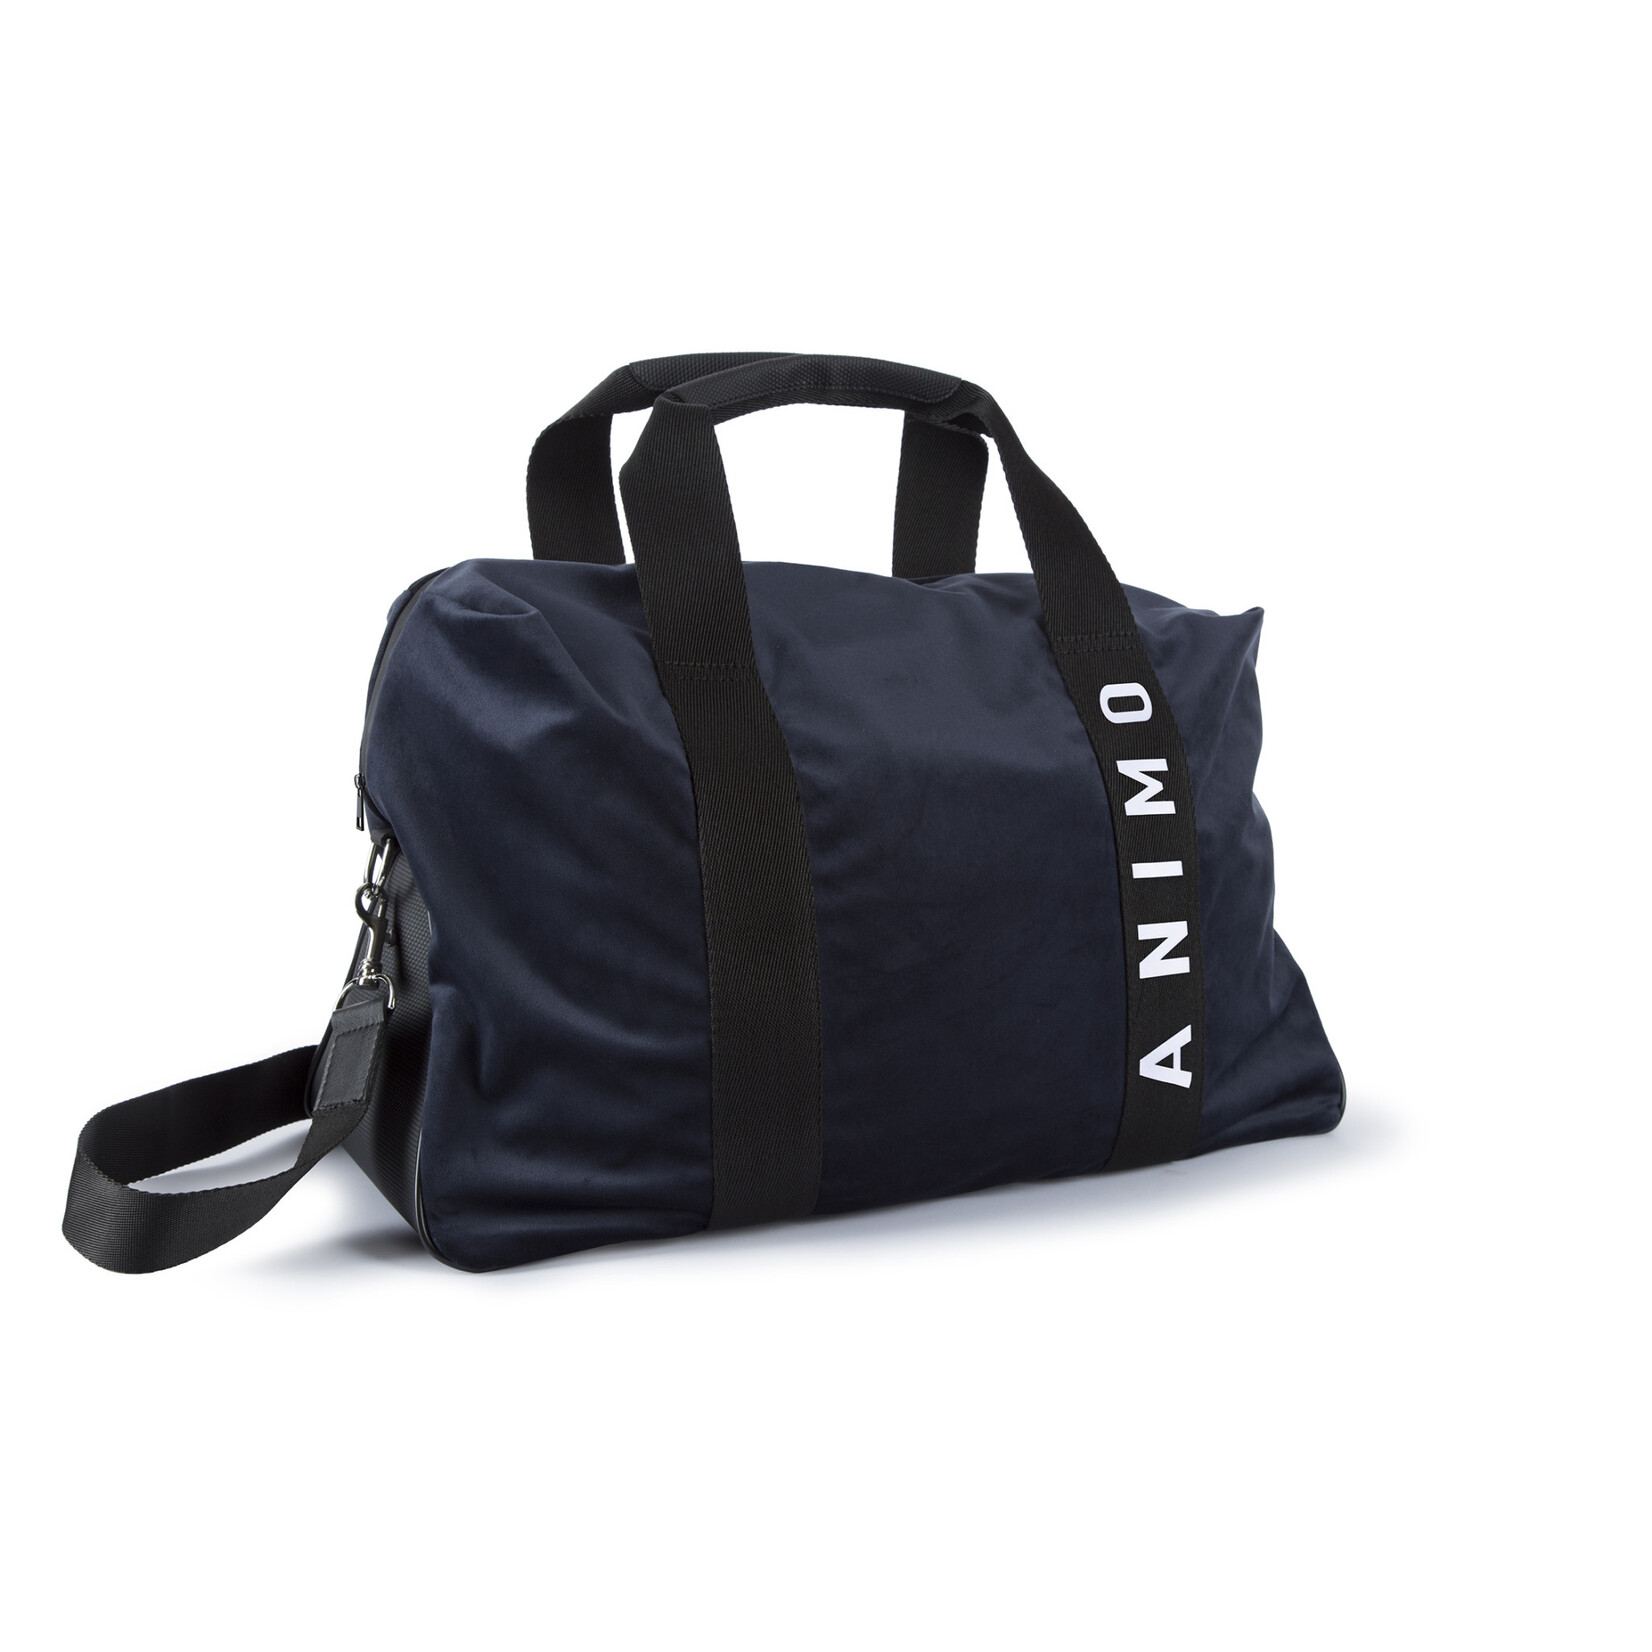 Animo King velvet travel bag with inside pocket